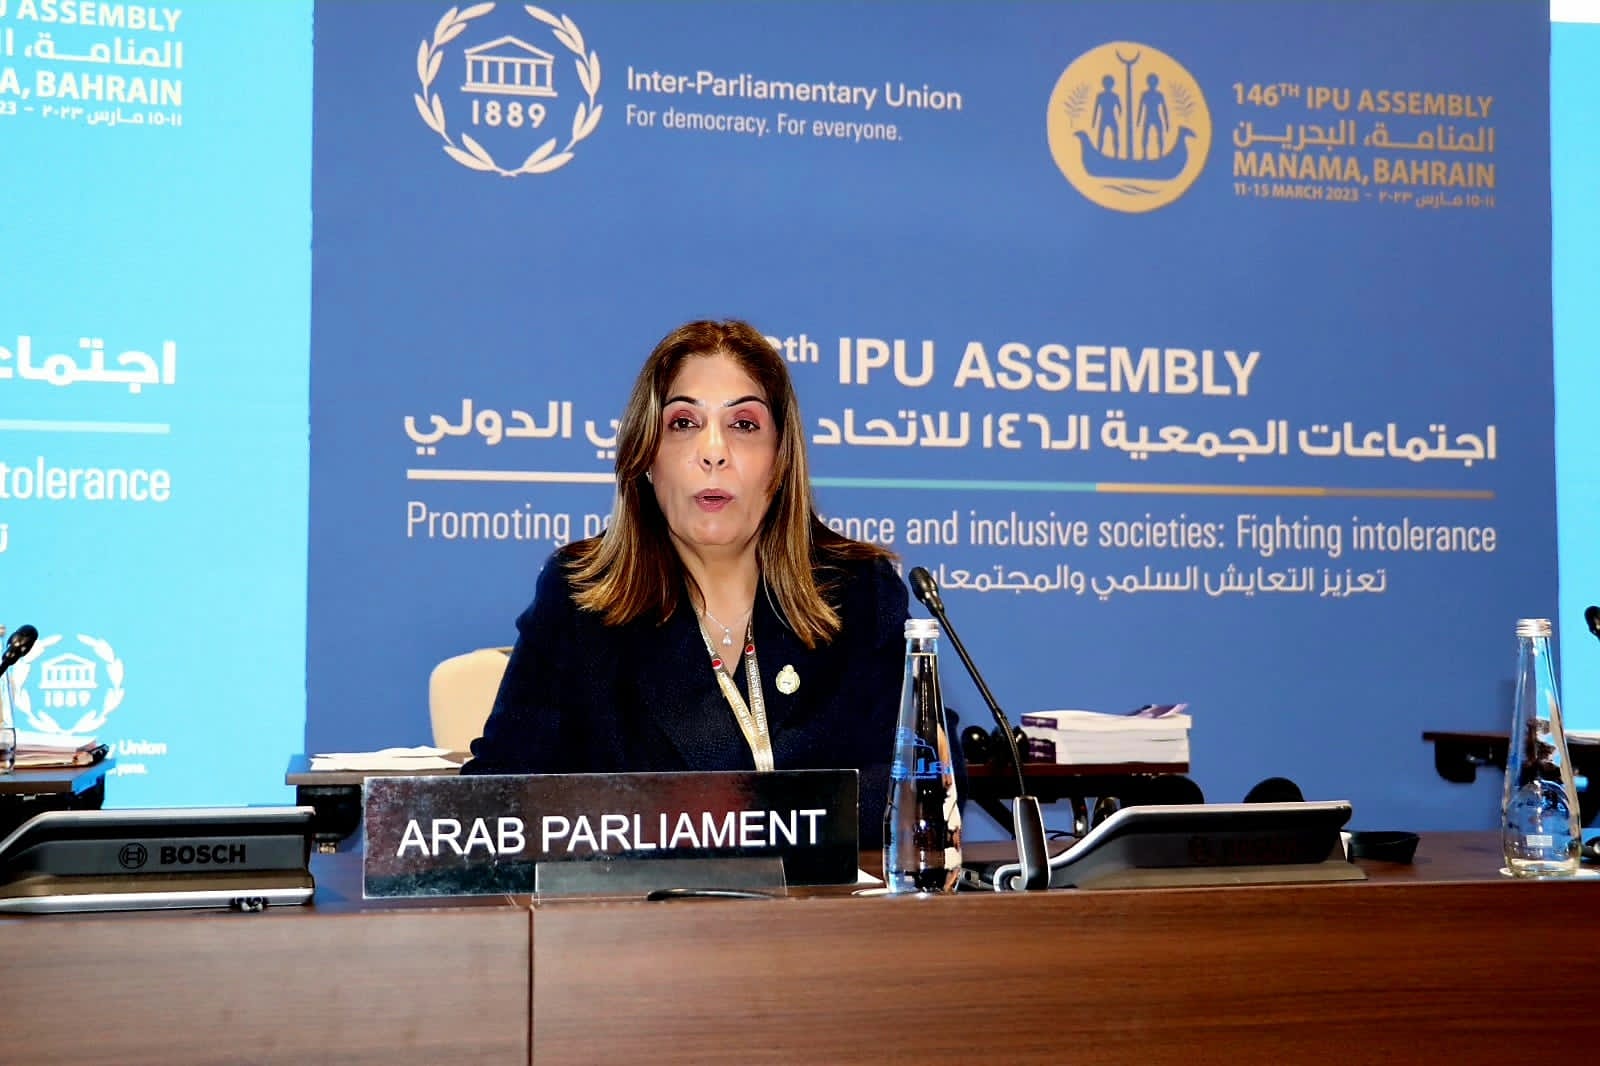 *البرلمان العربي يدعو إلى خطة عمل برلمانية لبناء قدرات النساء في معالجة الأزمات والتحديات المعاصرة*